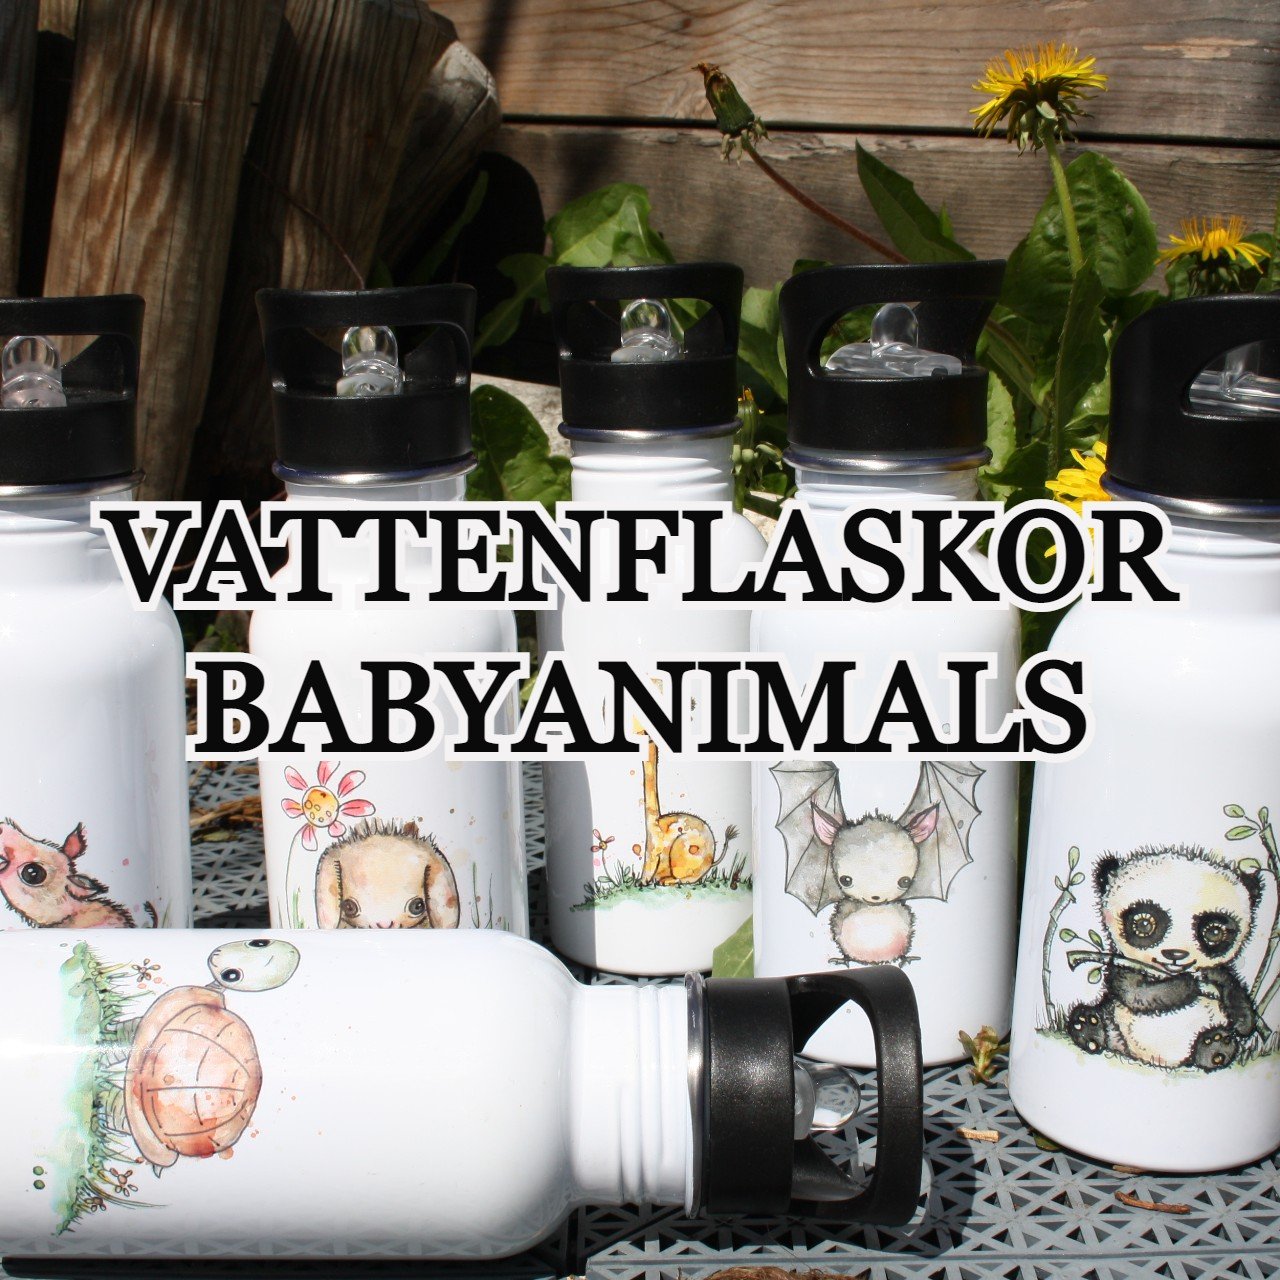 Vattenflaskor - Baby Animals - Linda Elesif Victoria Weiland